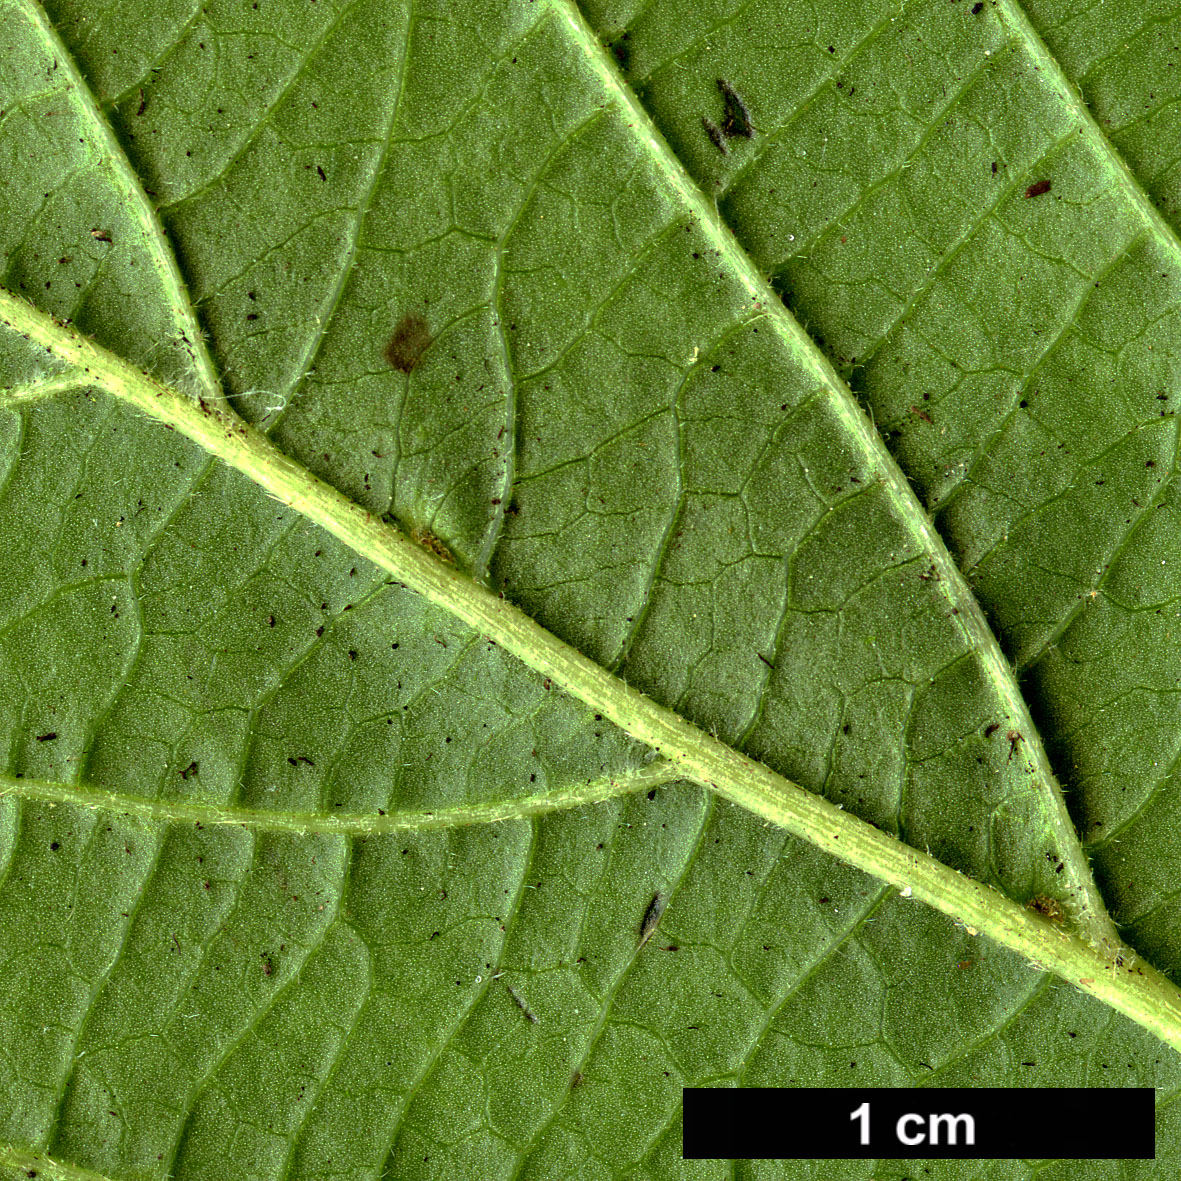 High resolution image: Family: Adoxaceae - Genus: Viburnum - Taxon: ovatifolium